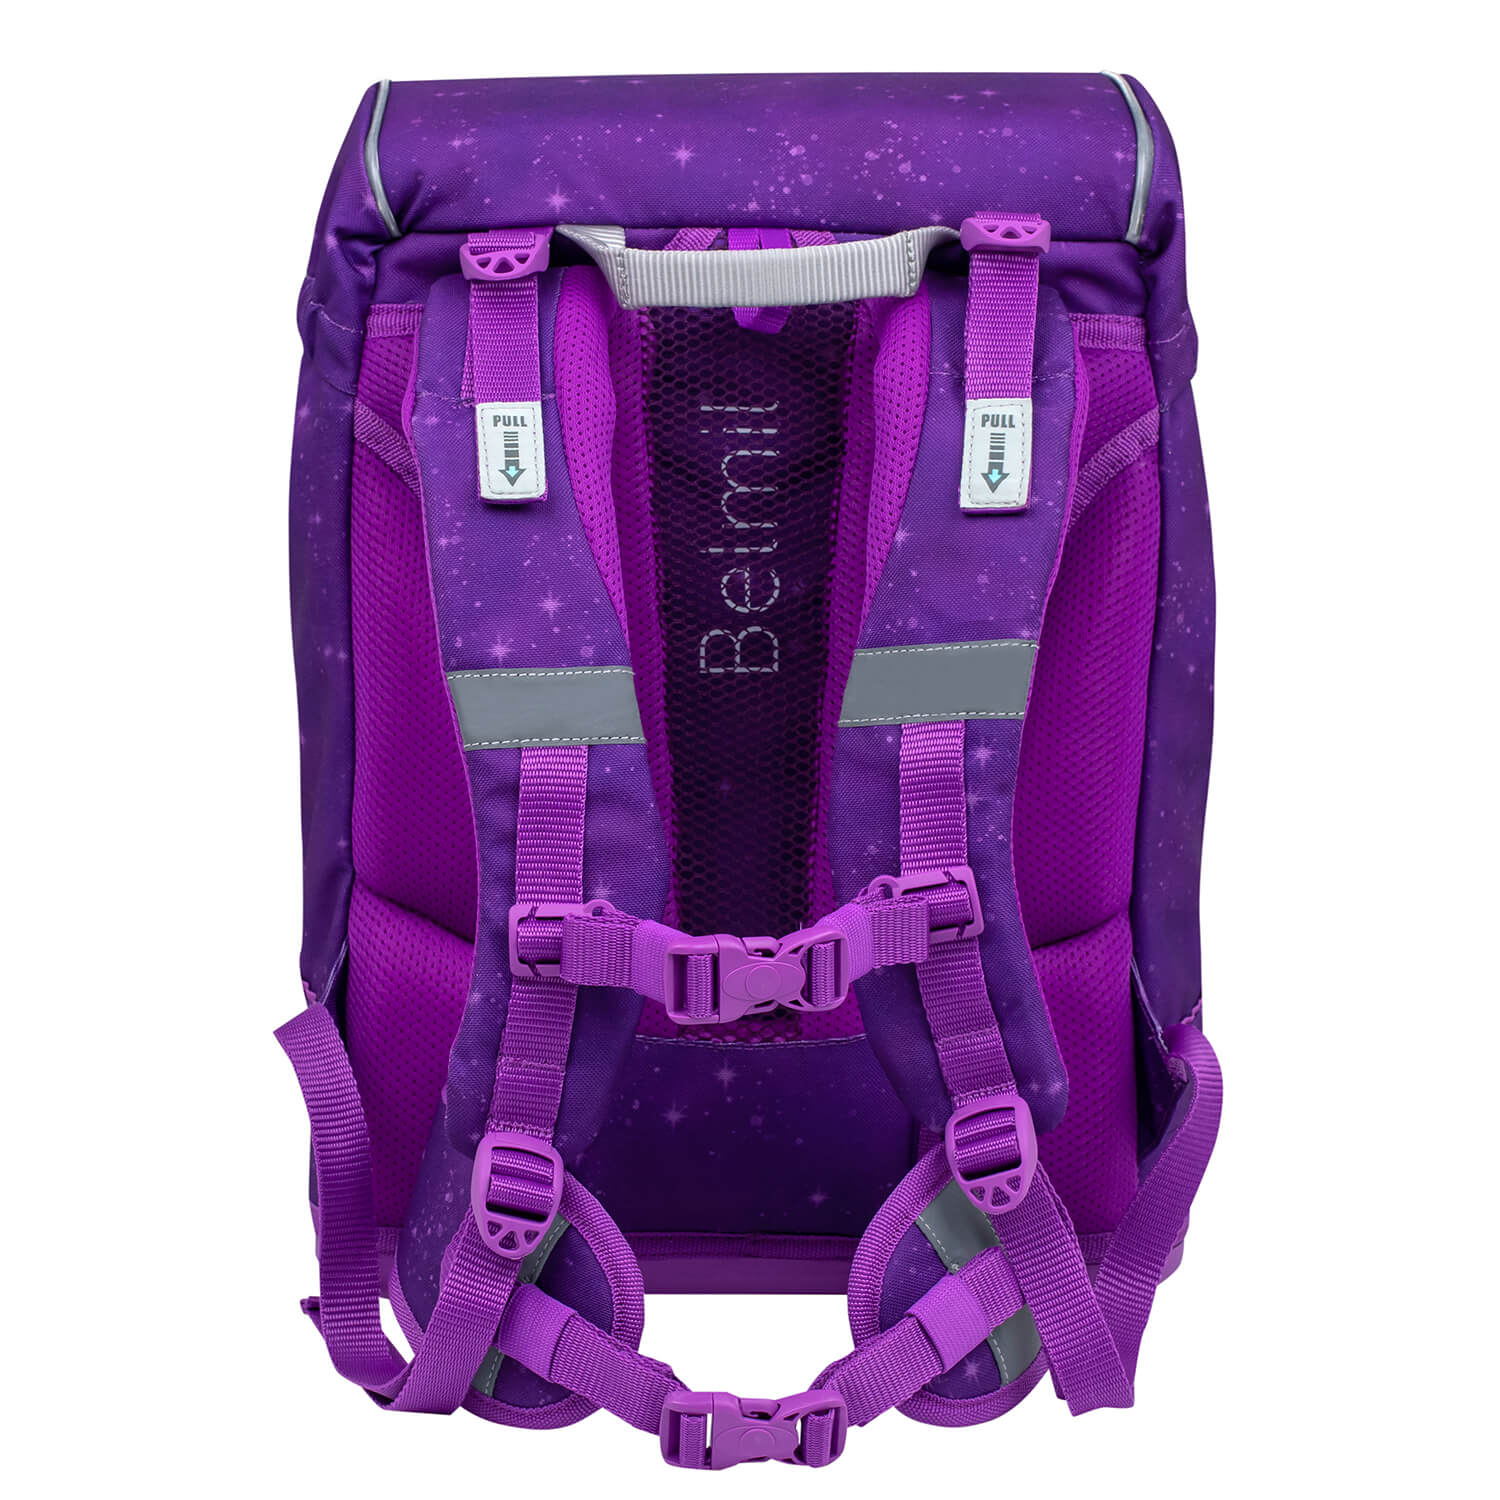 Motion Purple Sky schoolbag set 6 pcs